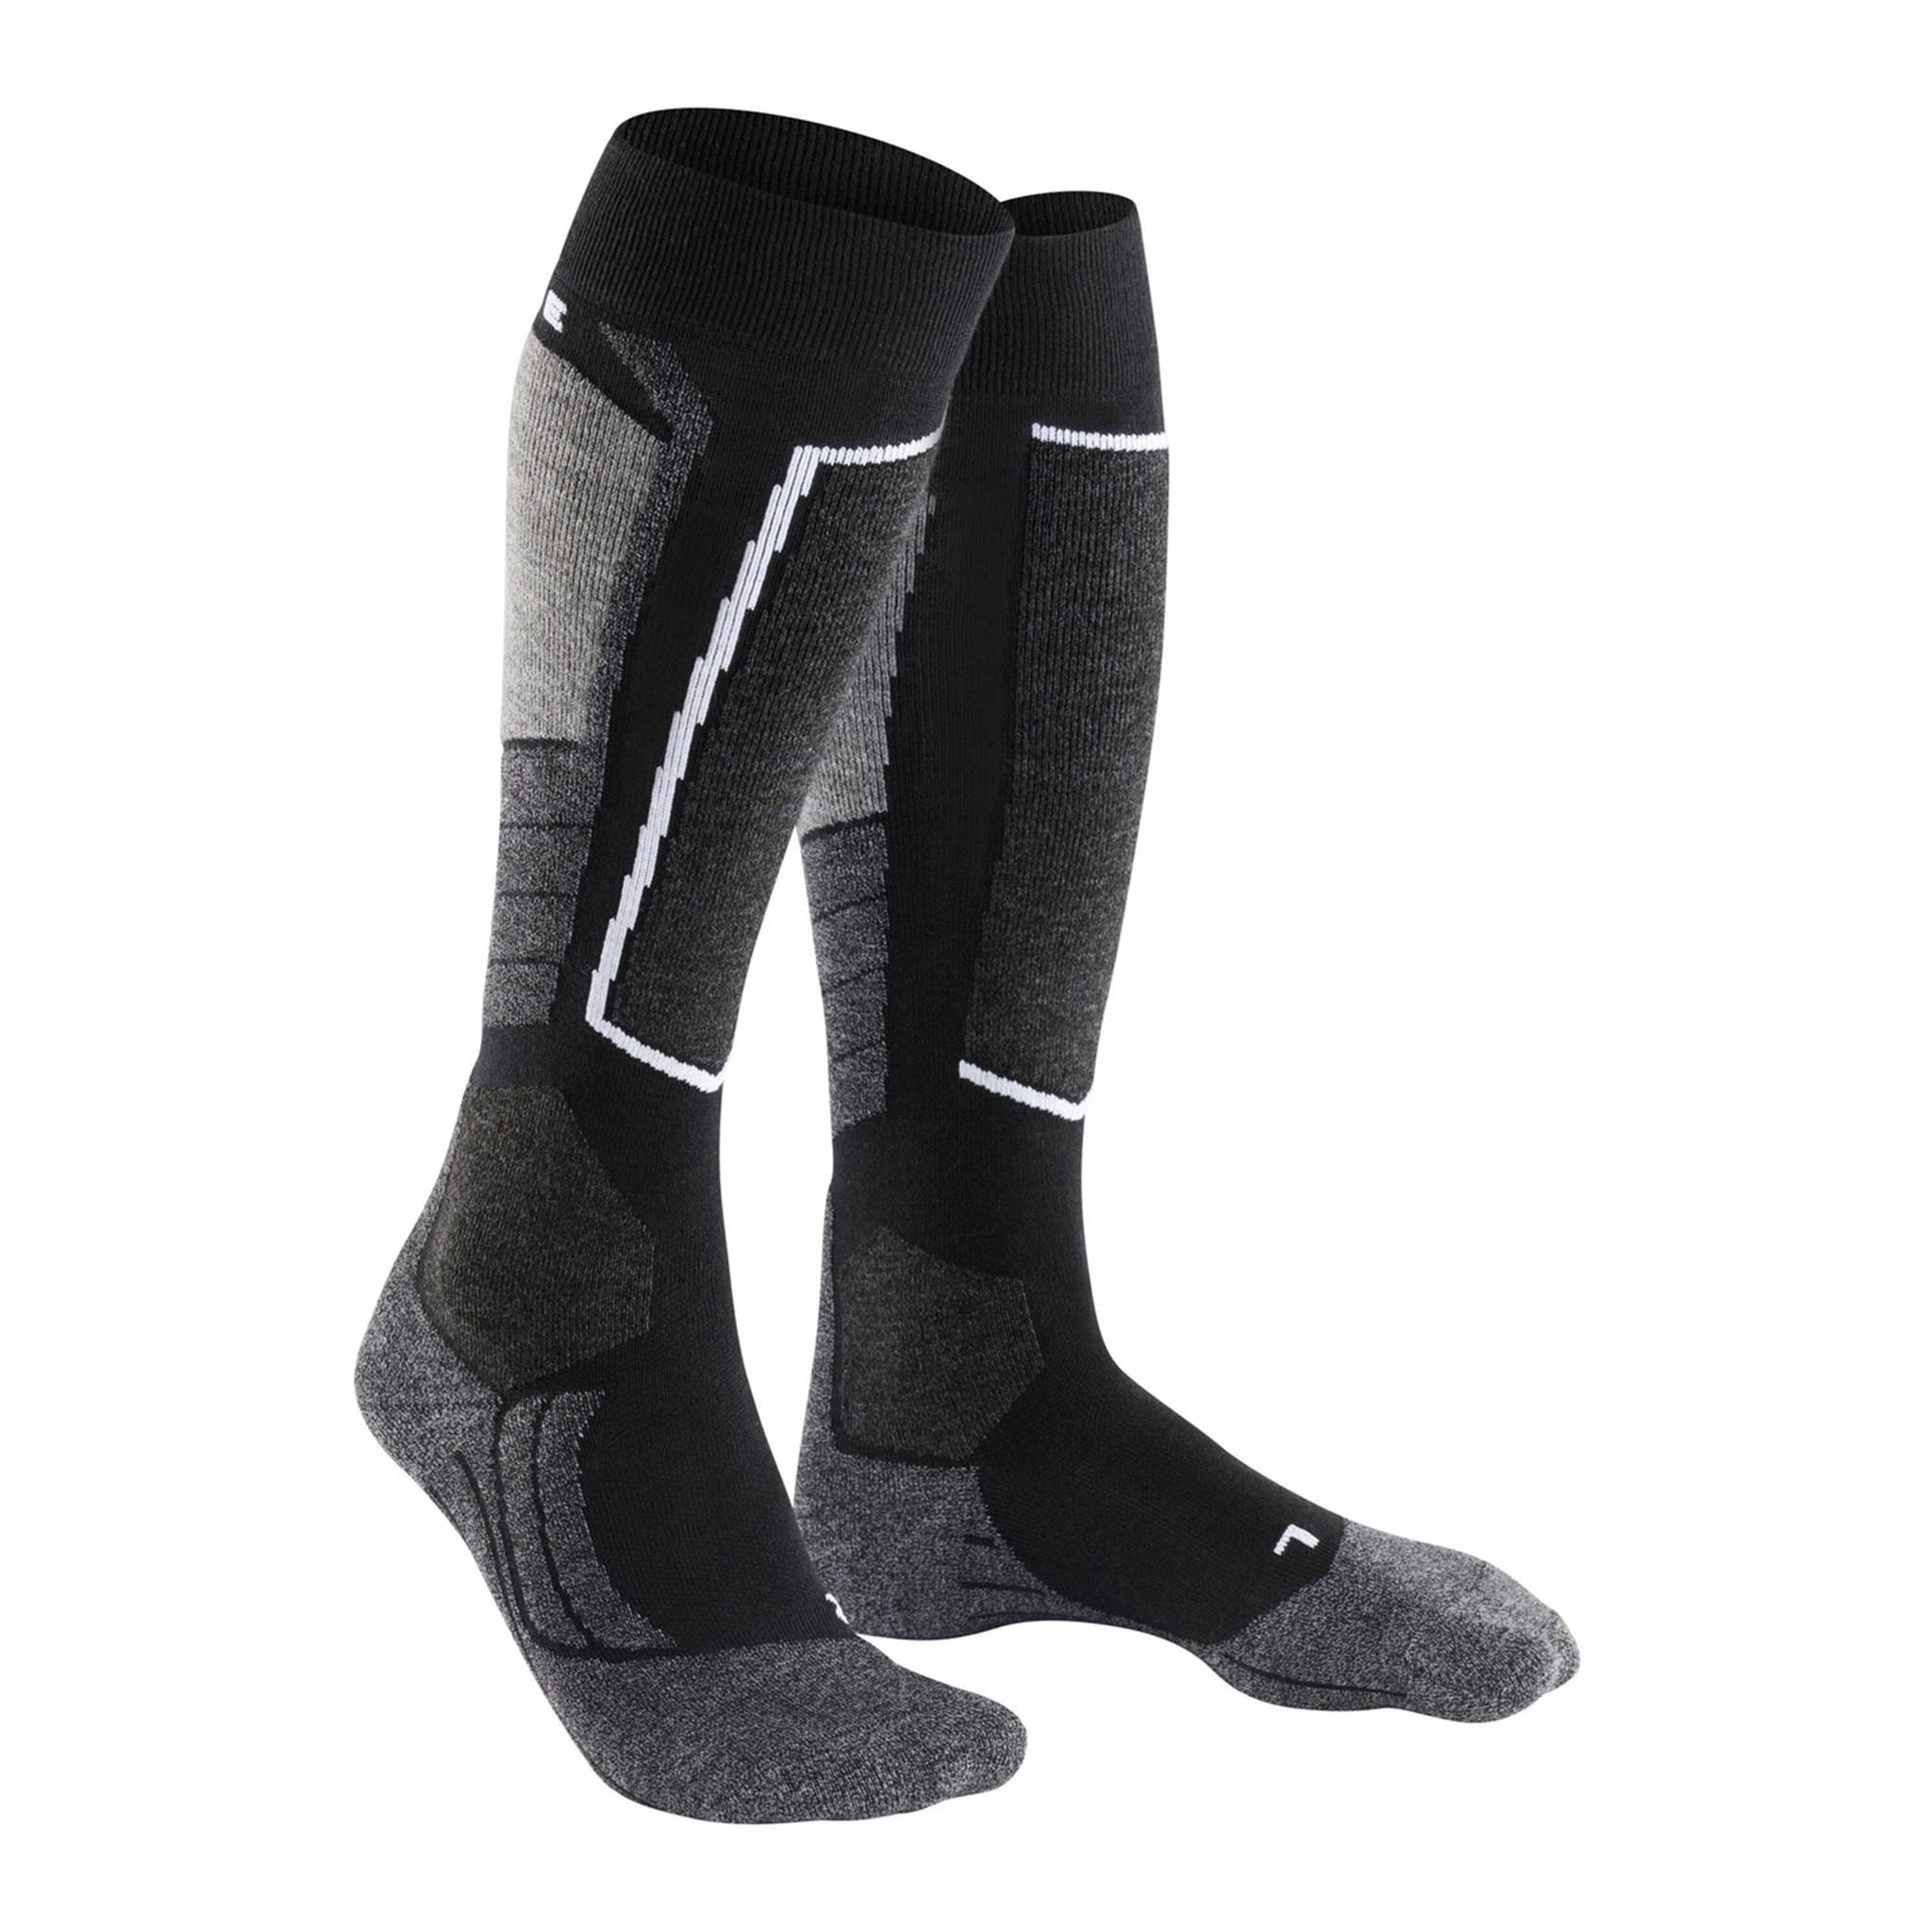 SK2 Women’s Ski Socks in Black